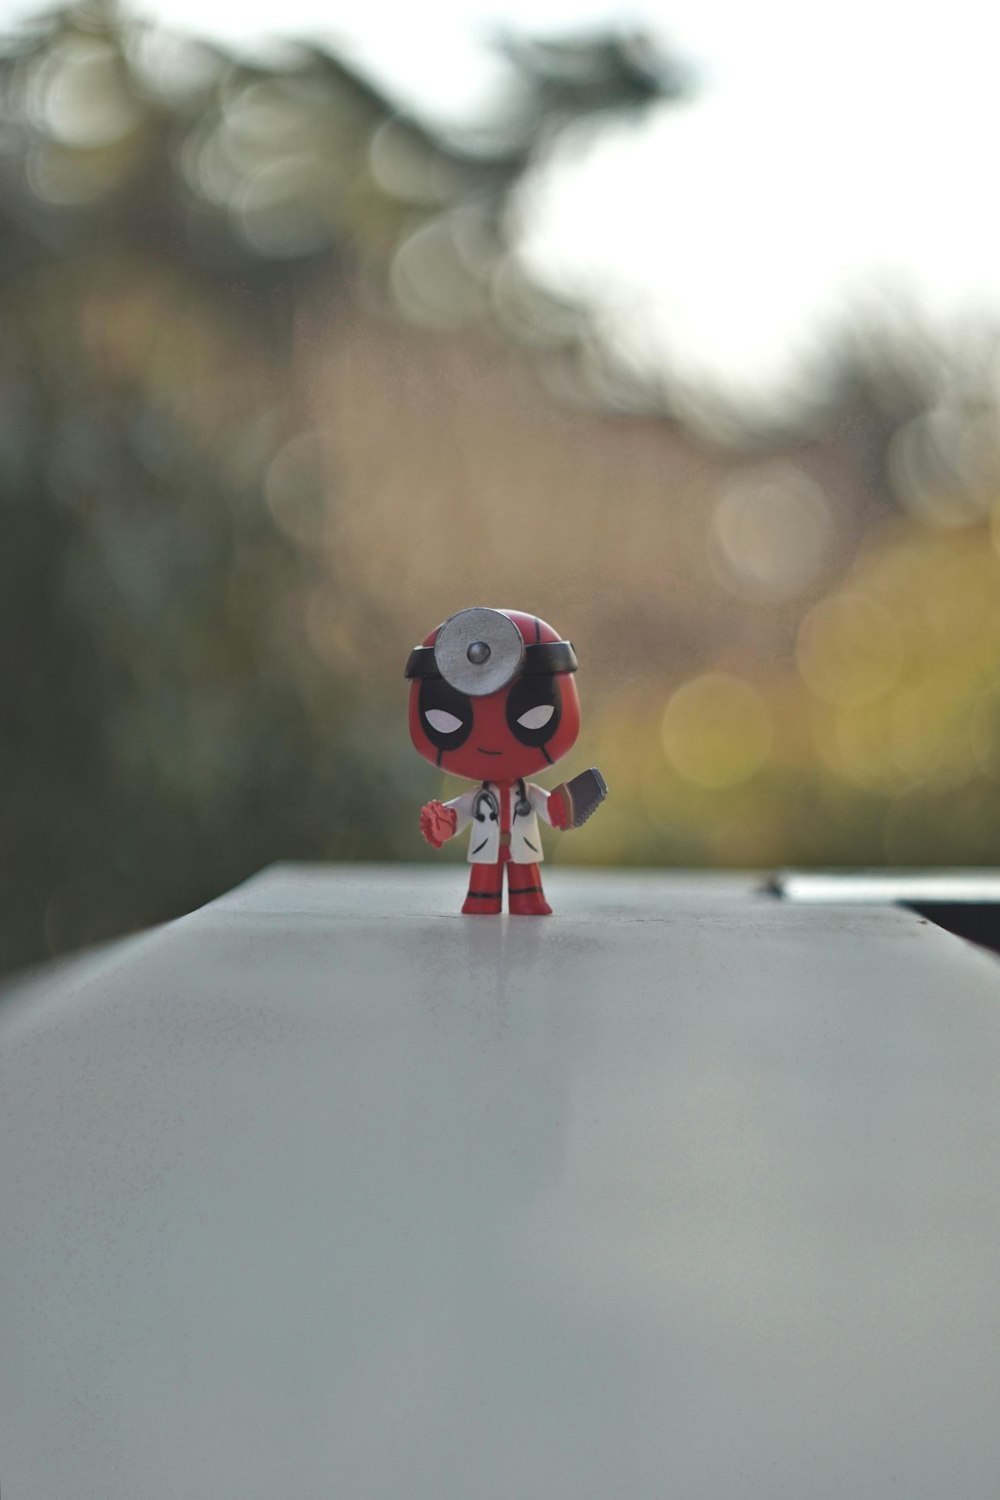 Une petite figurine de Deadpool assise sur une table